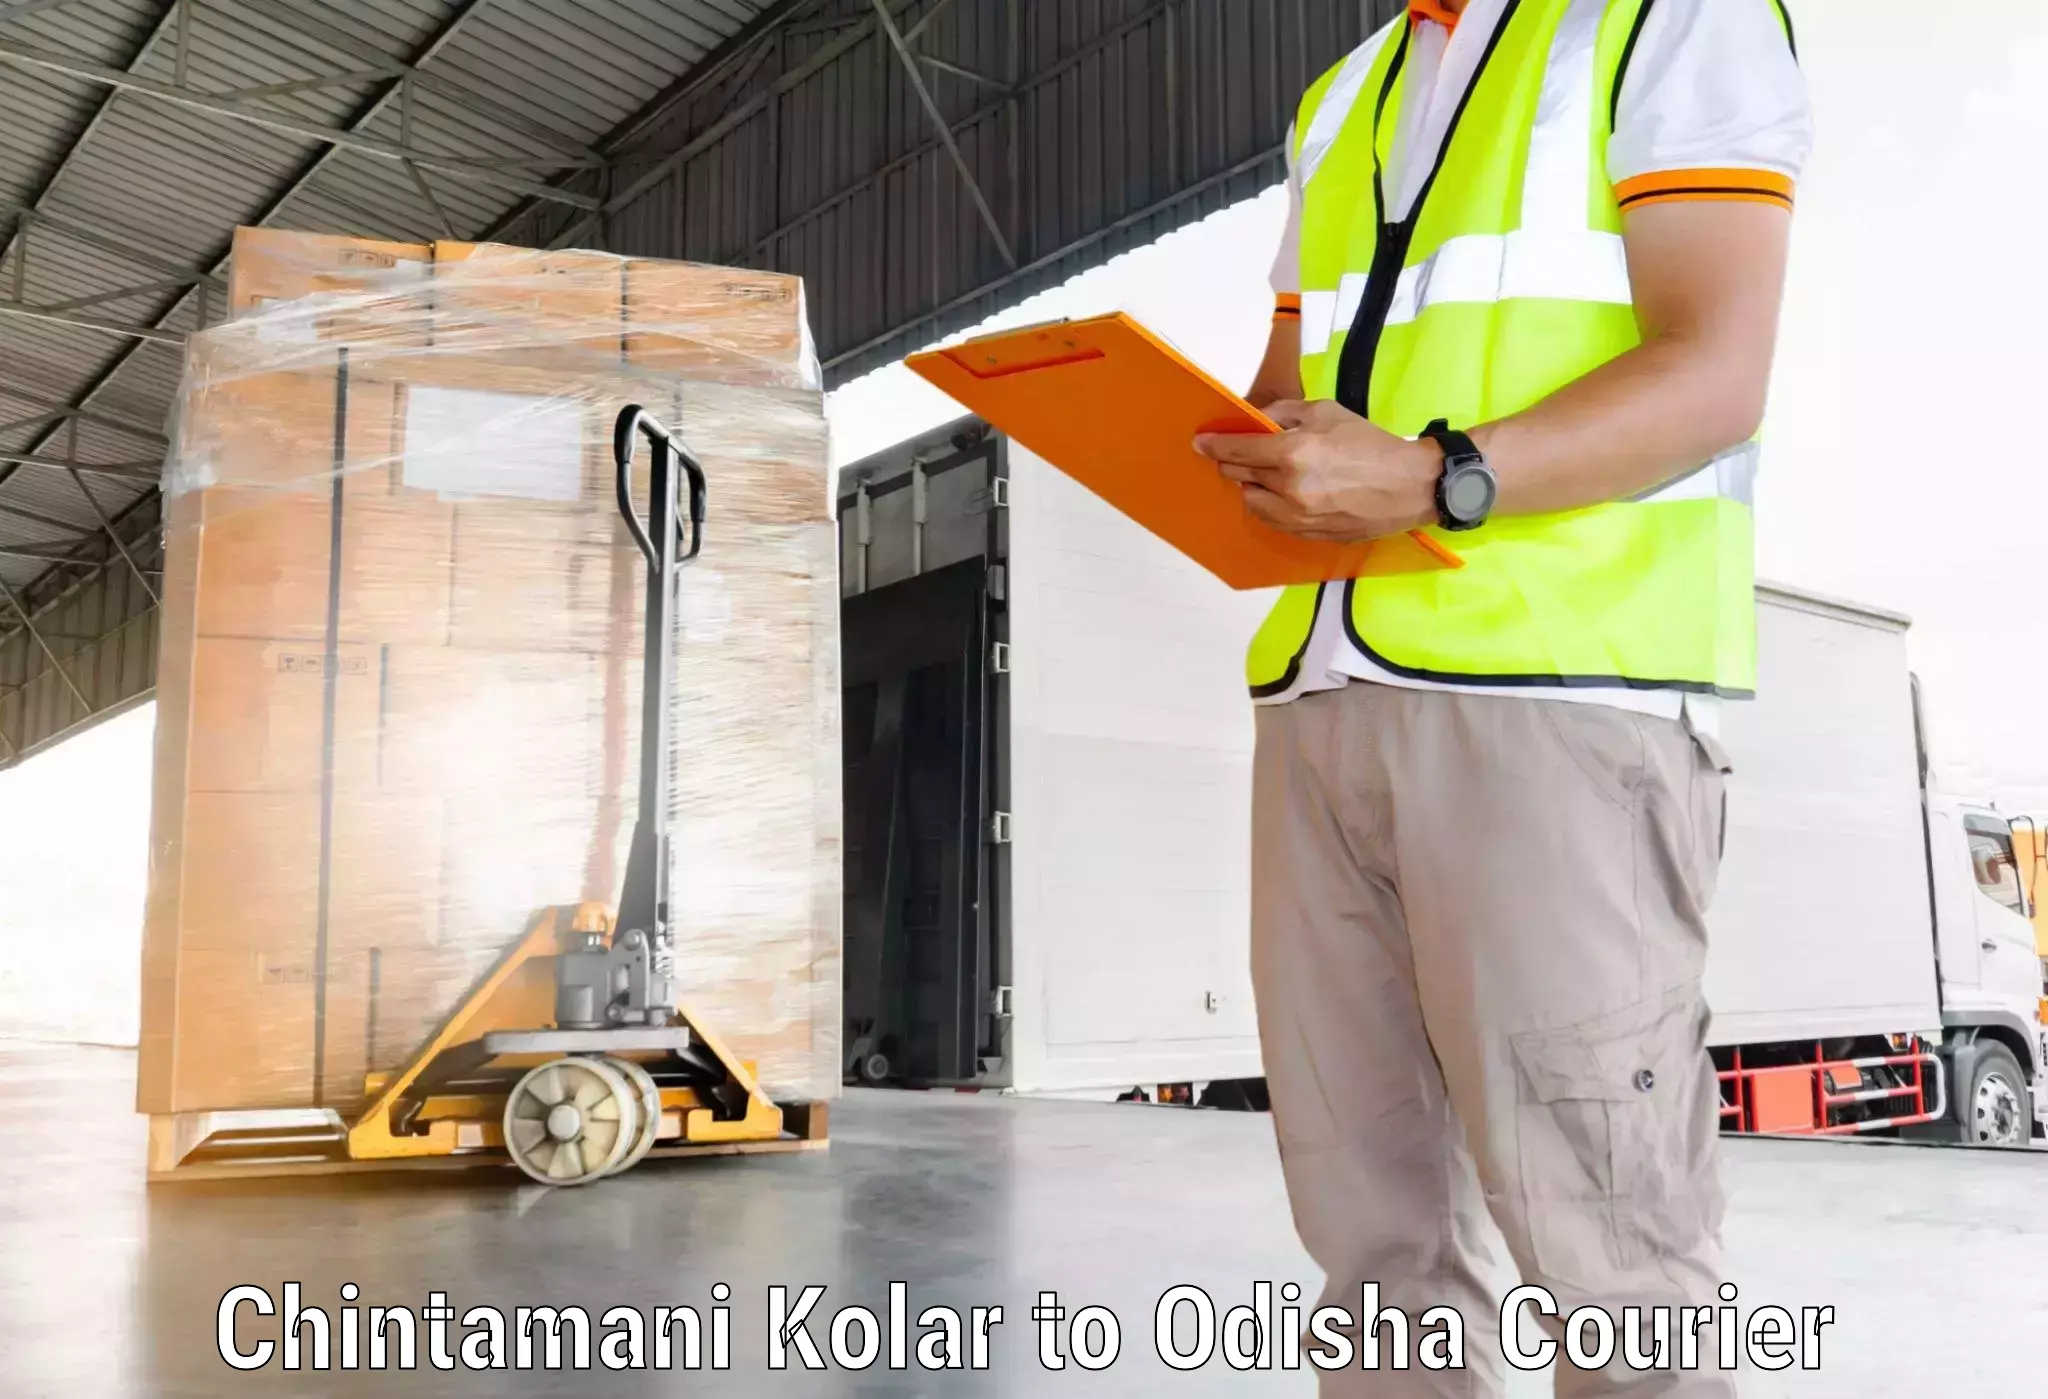 Efficient logistics management Chintamani Kolar to Balinga